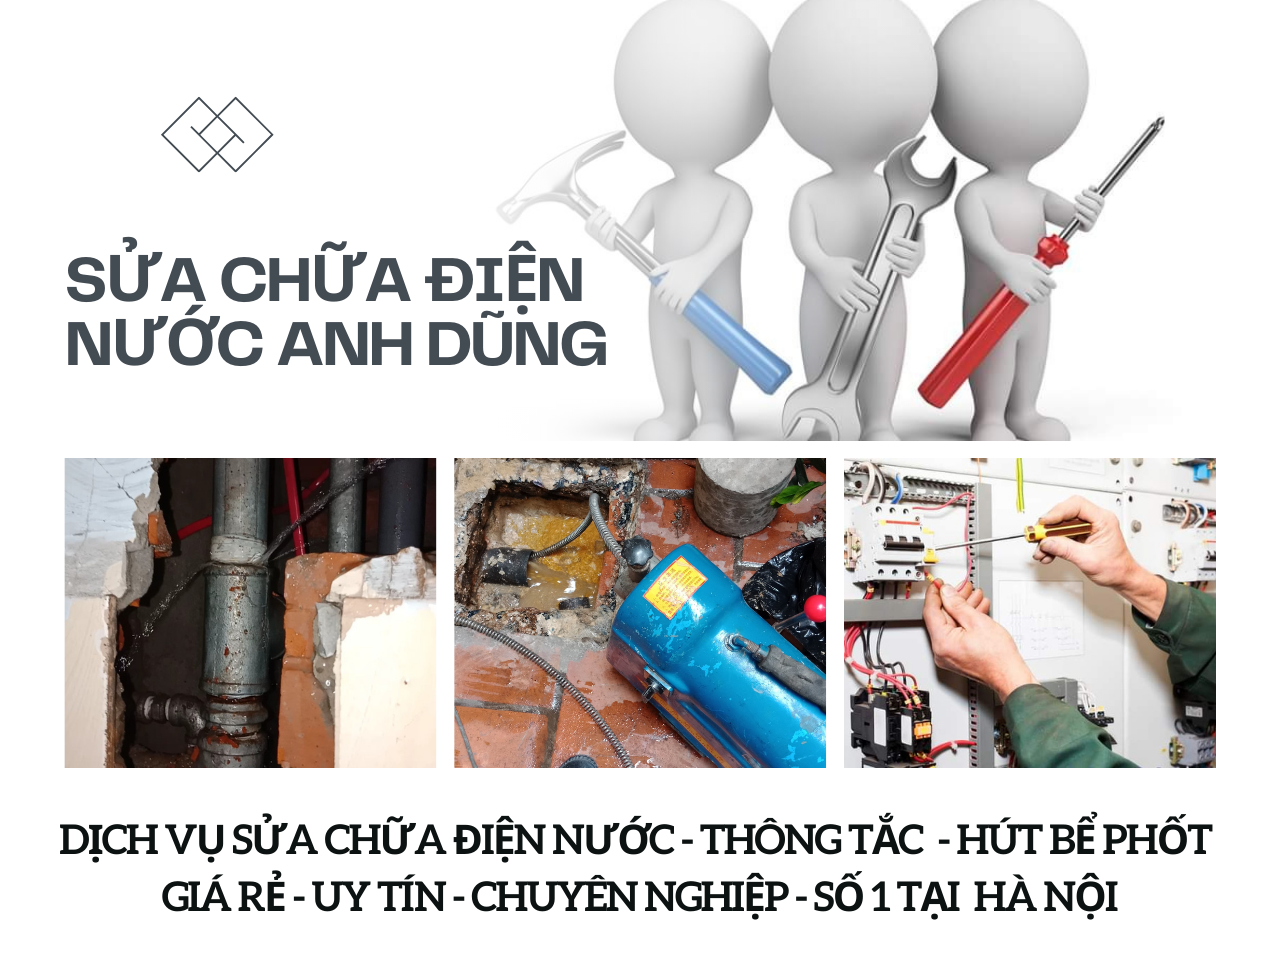 Dịch vụ cung cấp thợ sửa chữa điện nước tại nhà Hà Nội giá rẻ Anh Dũng